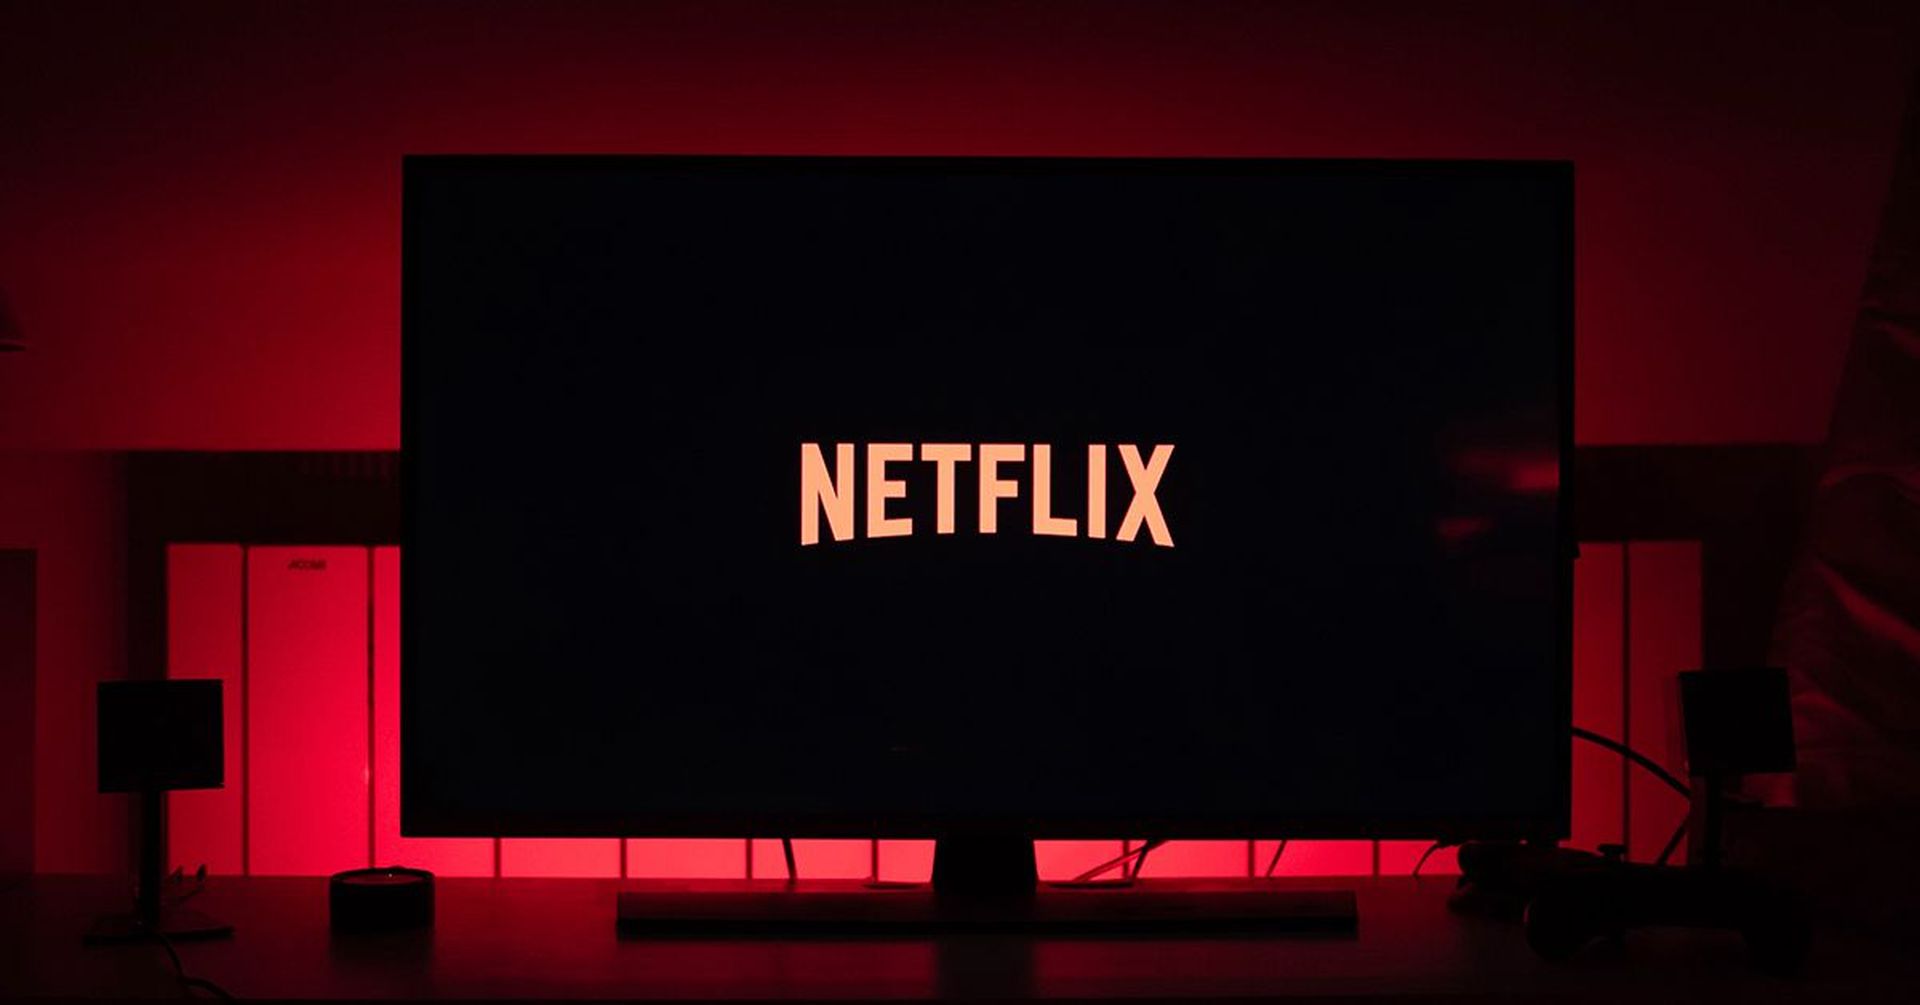 Is Microsoft buying Netflix?